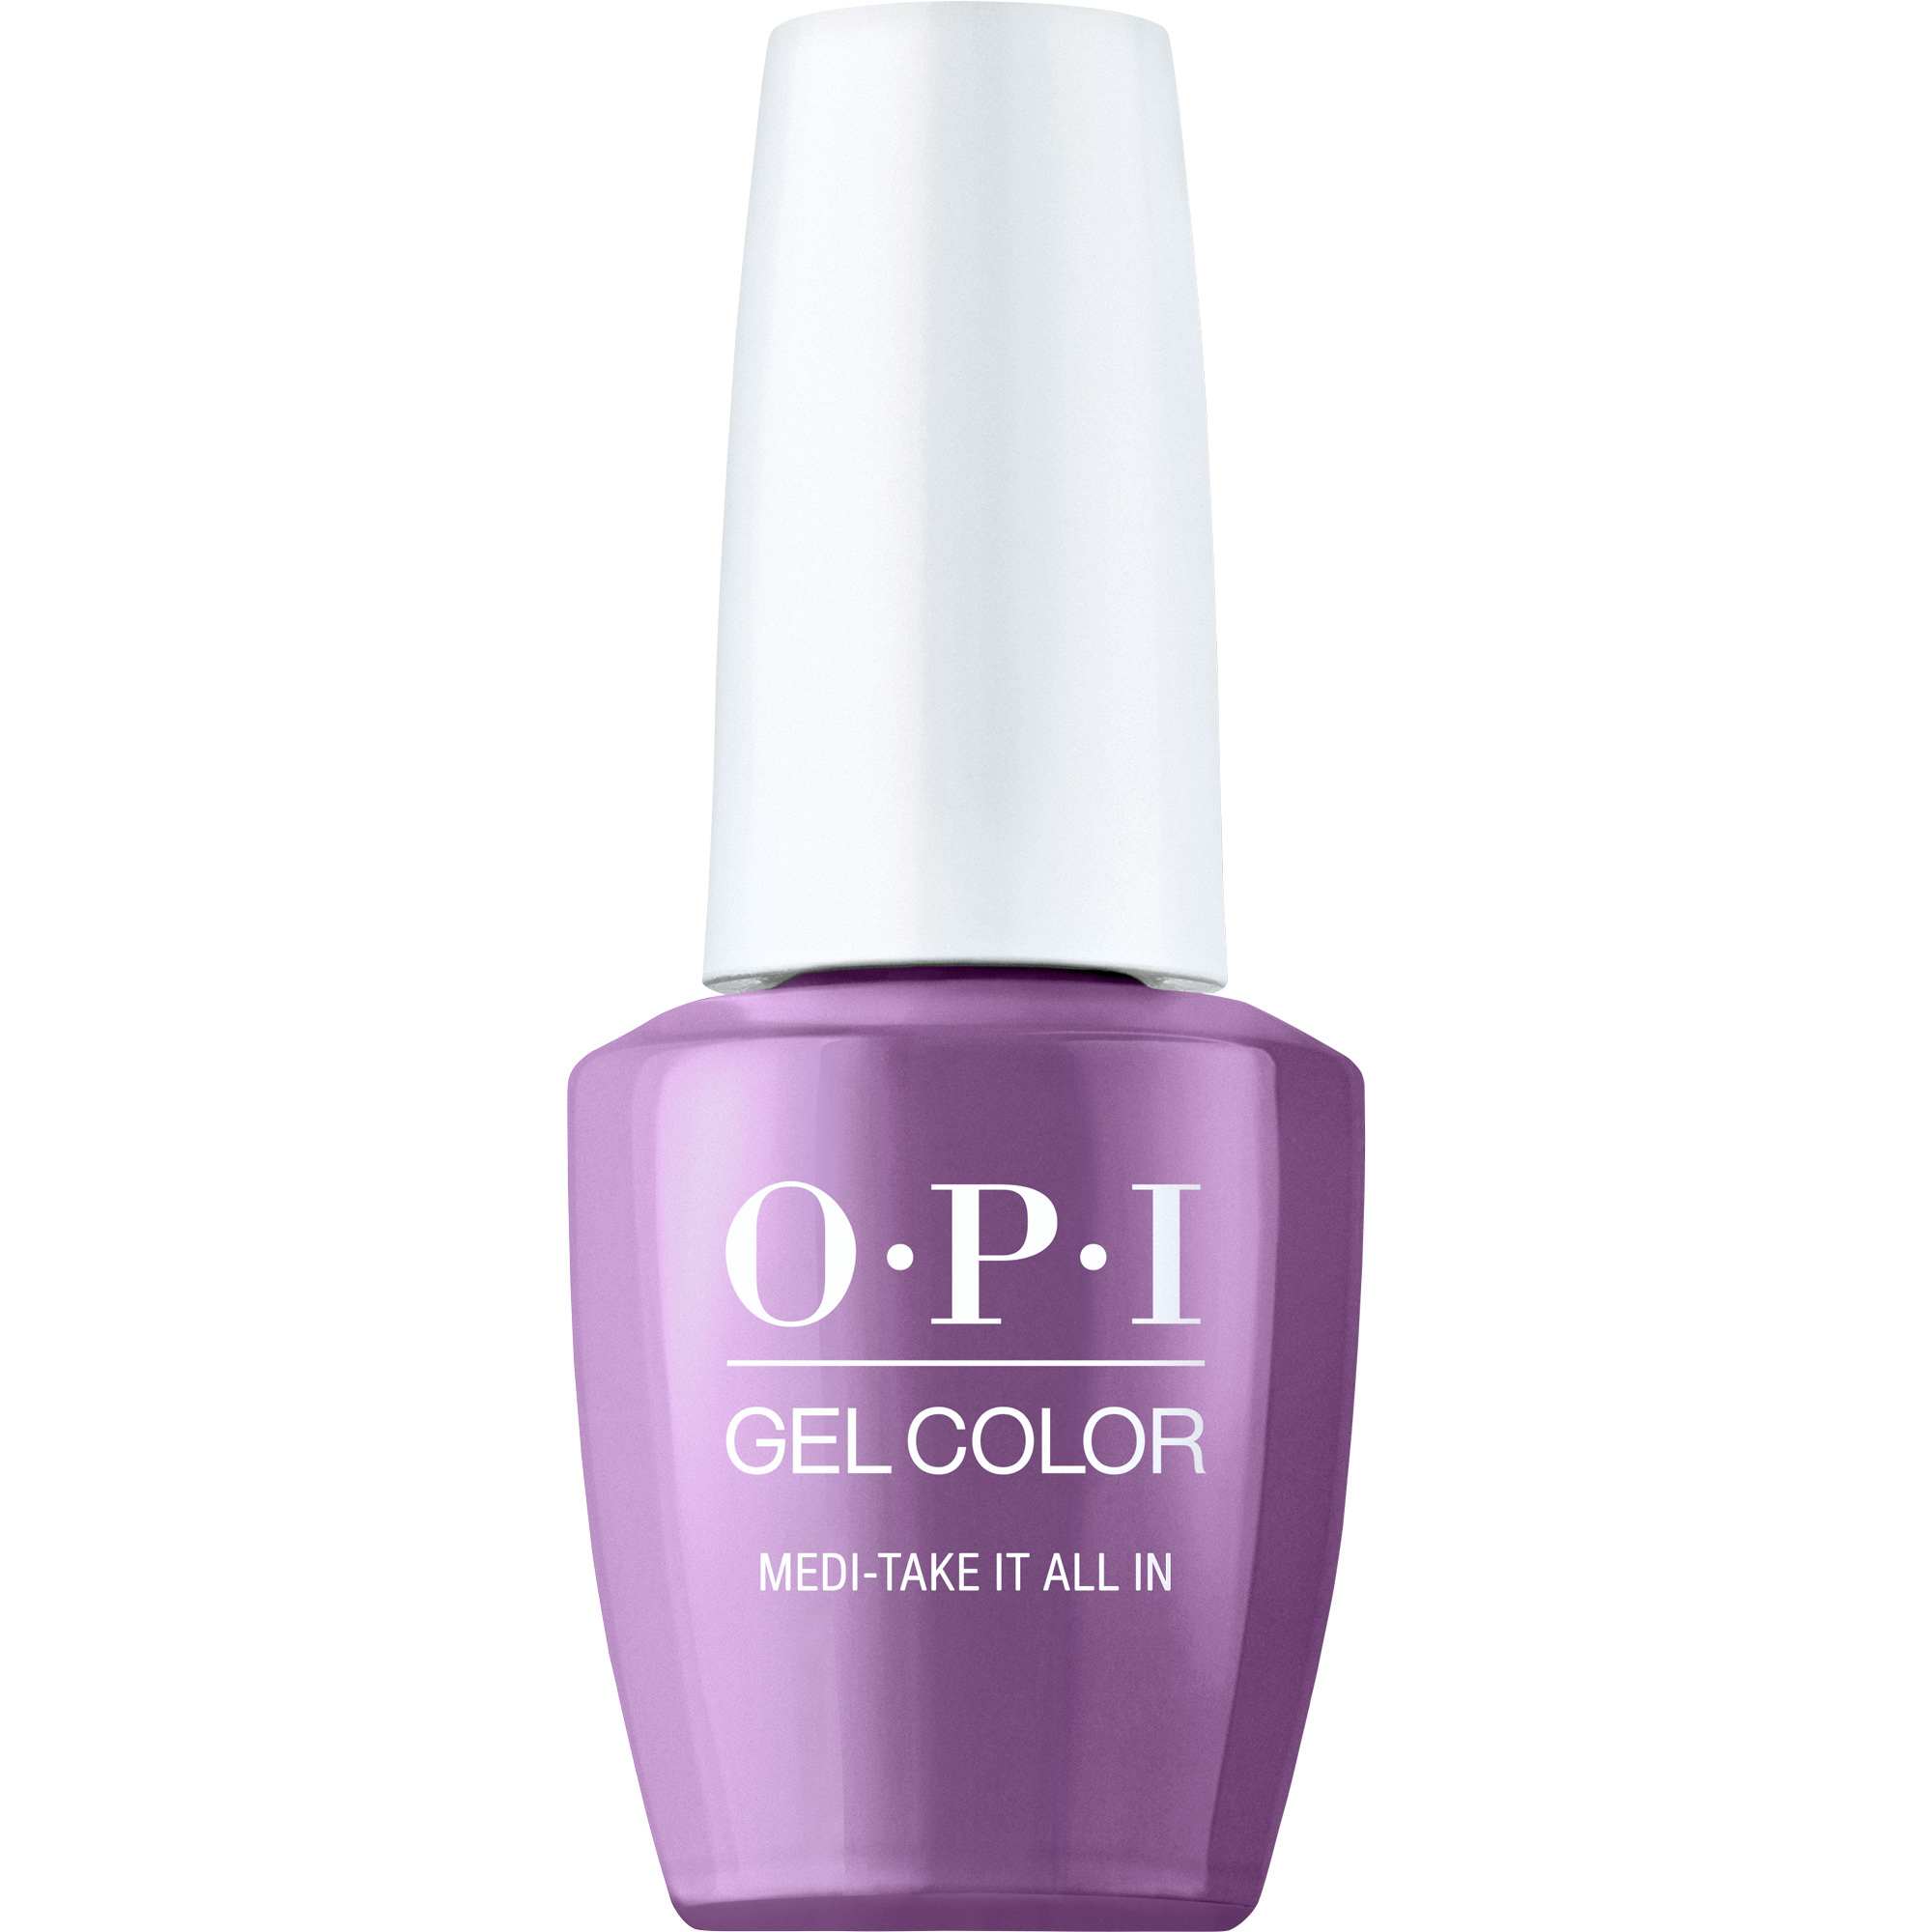 OPI Gel Color 360 - Medi-take it All In